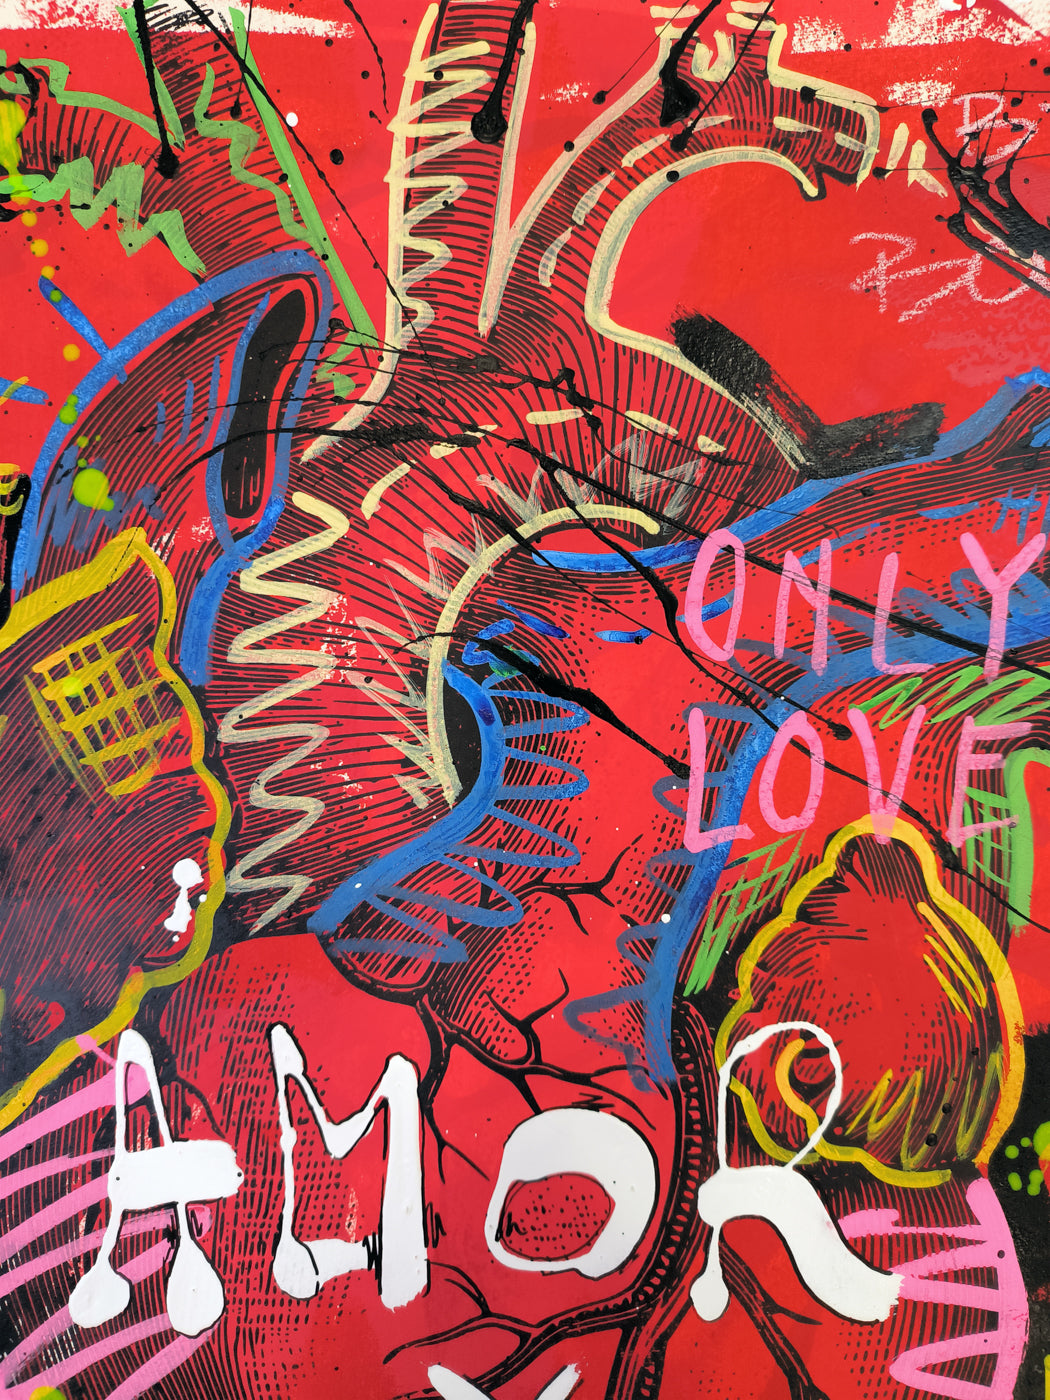 Corazón Intervenido: Palabras de Amor en el Arte Urbano Contemporáneo - Retrato Print (original painting on paper)